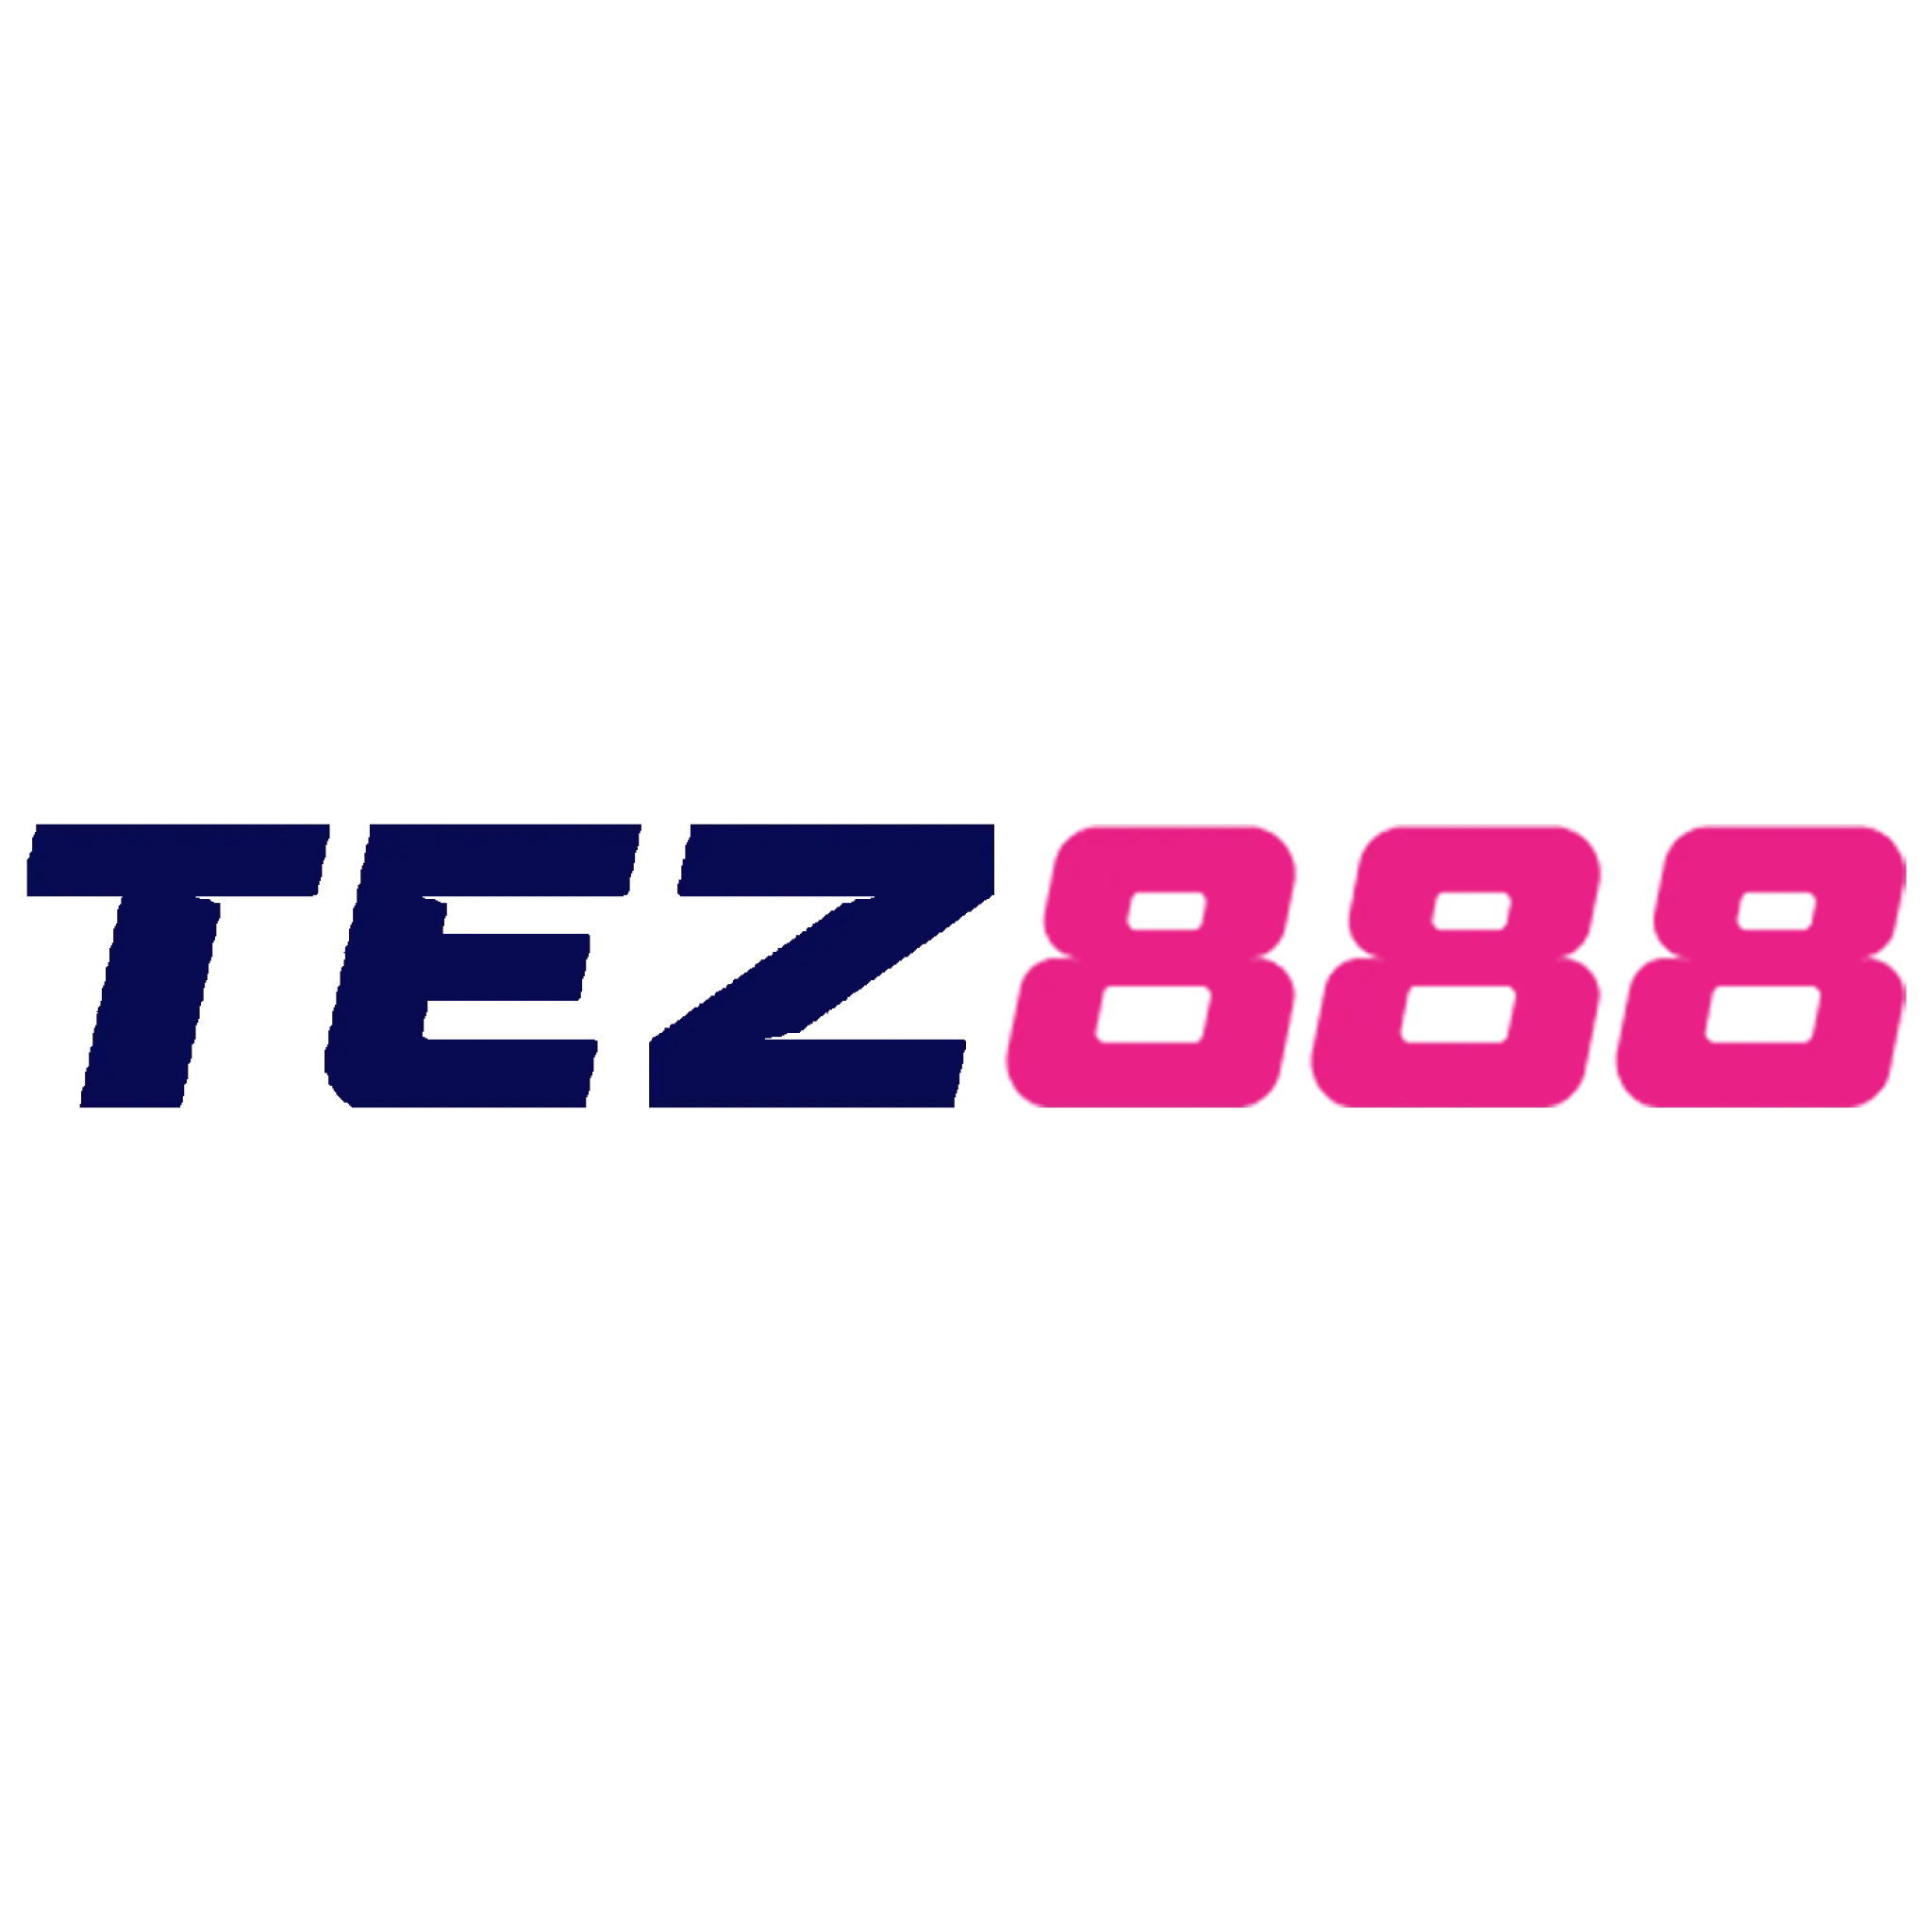 Tez888